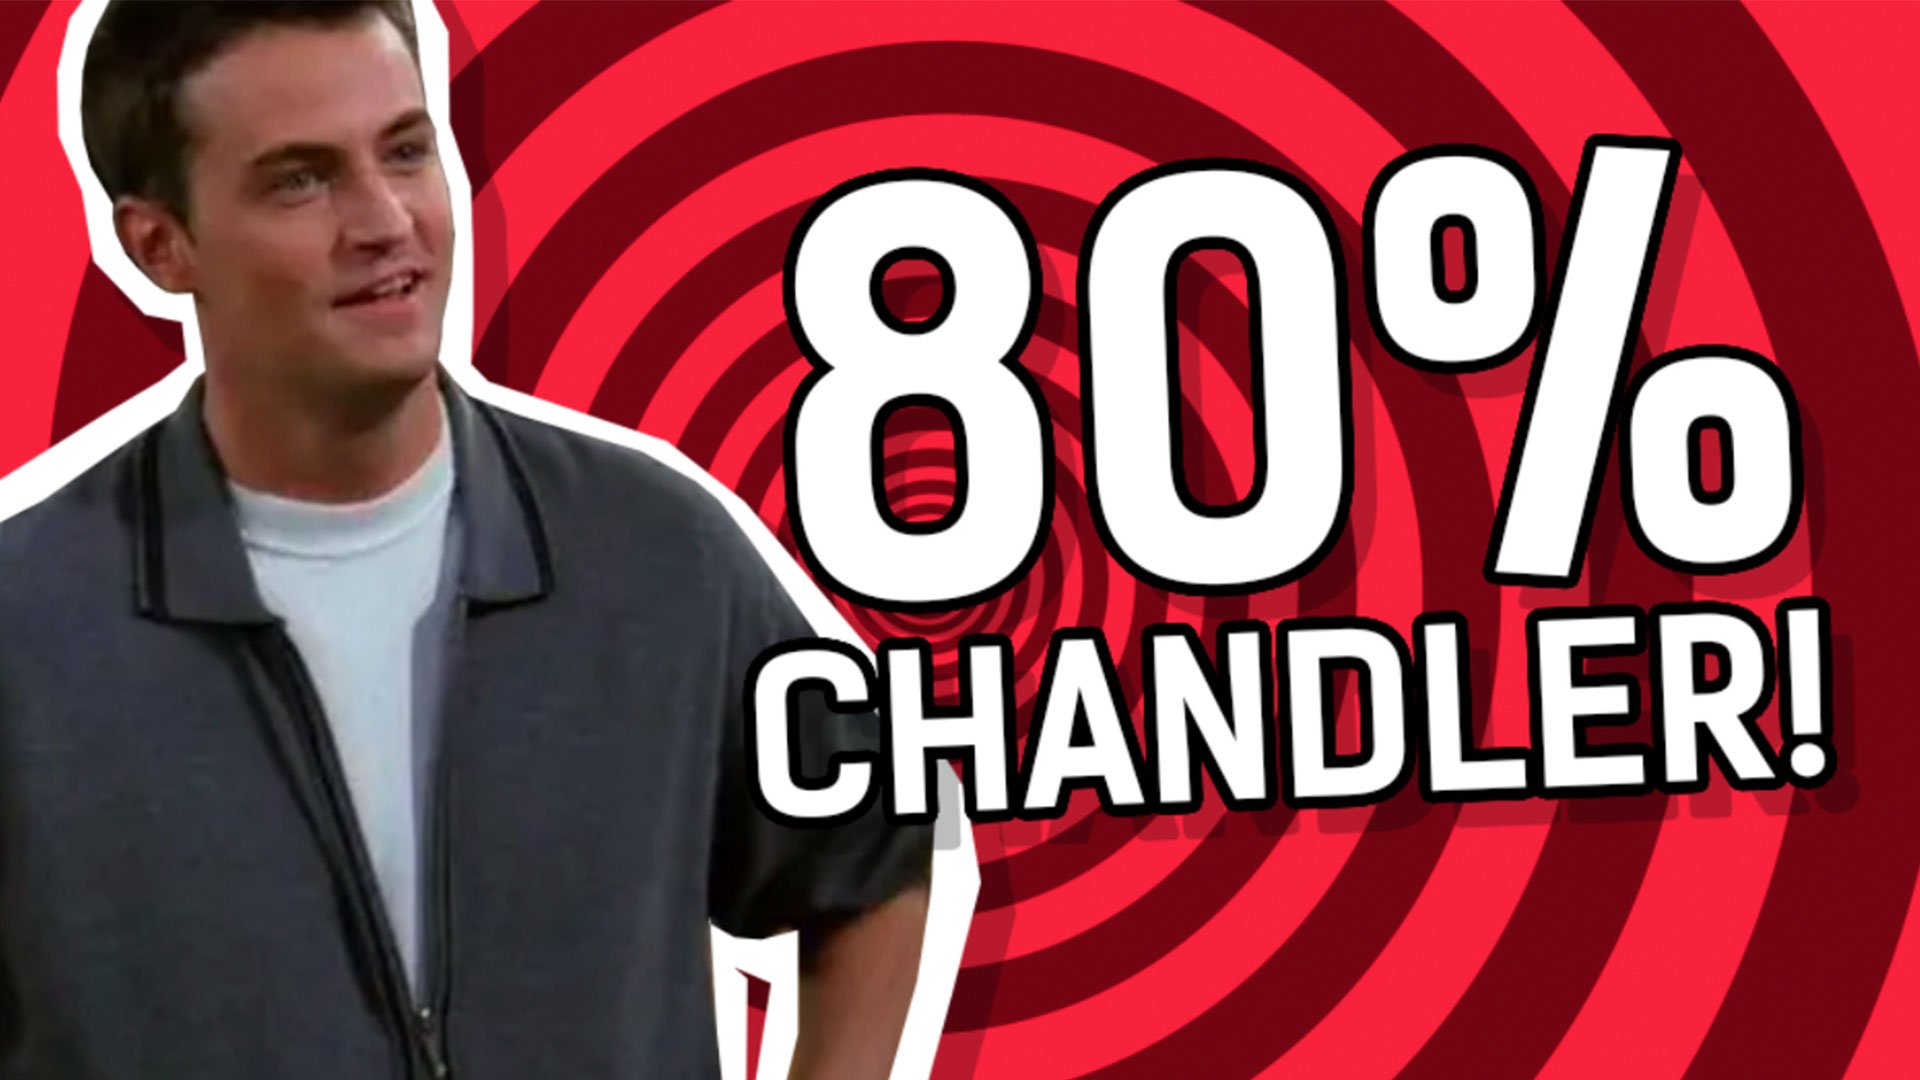 Result: 80% Chandler